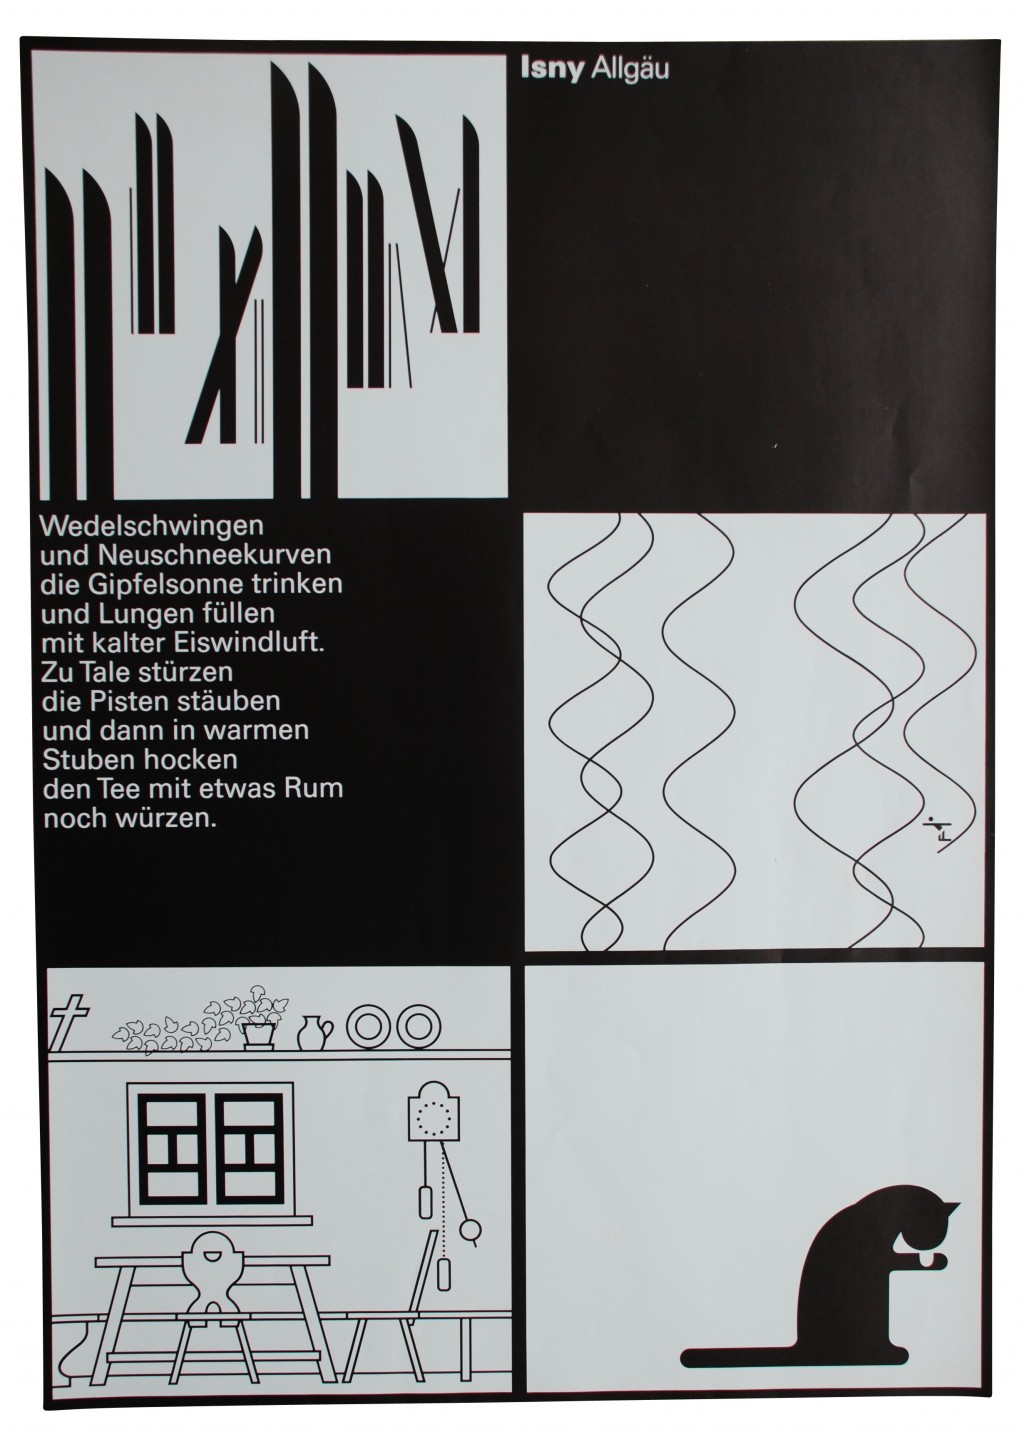 Künstlerplakat 'Isny Allgäu', Otl Aicher 1977